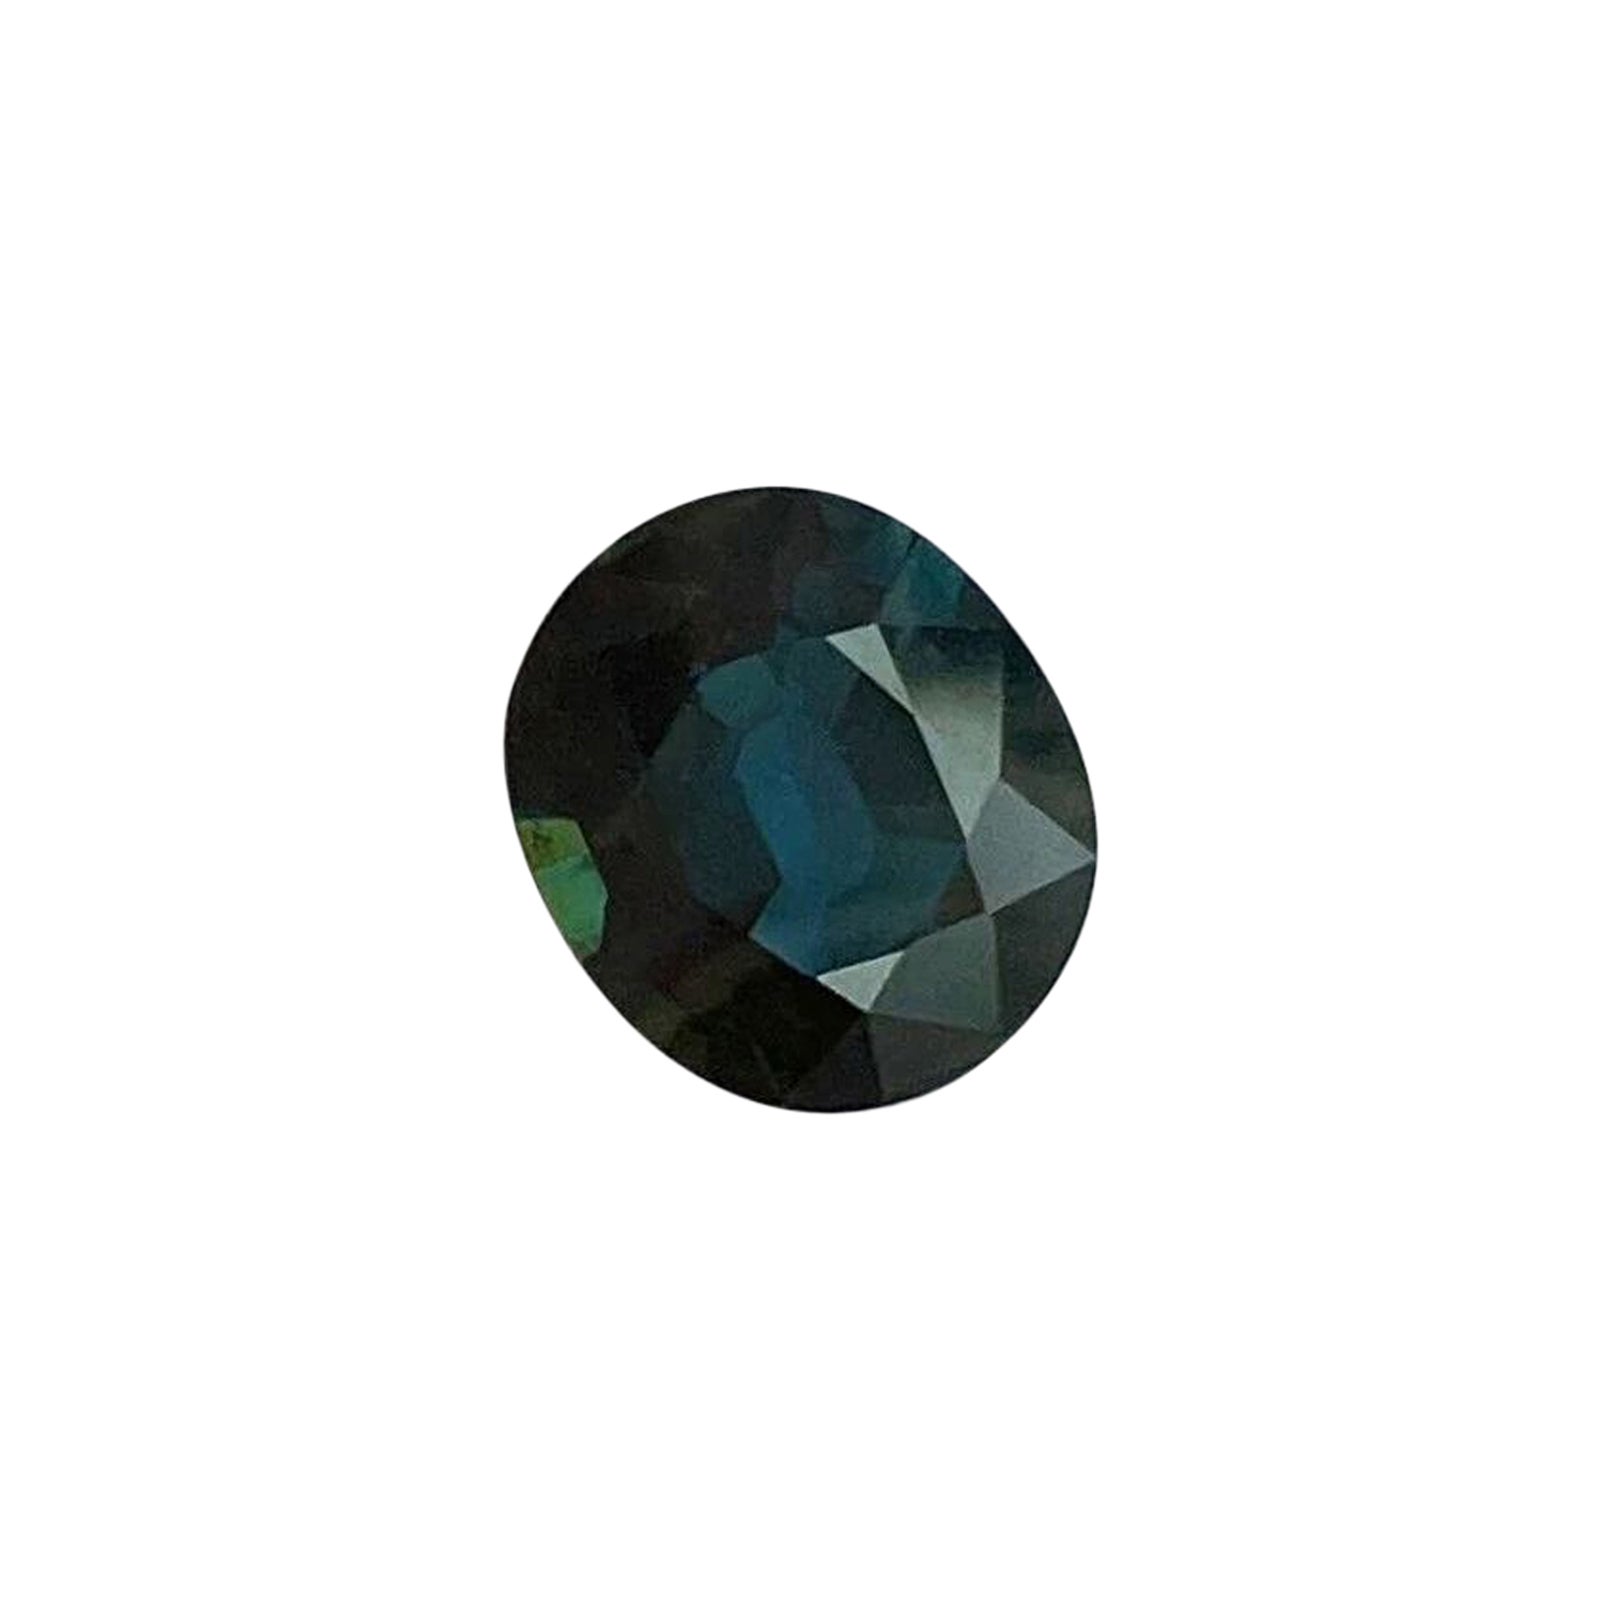 Saphir bleu profond de 1,35 carat, pierre précieuse non sertie certifiée IGI, taille ovale rare